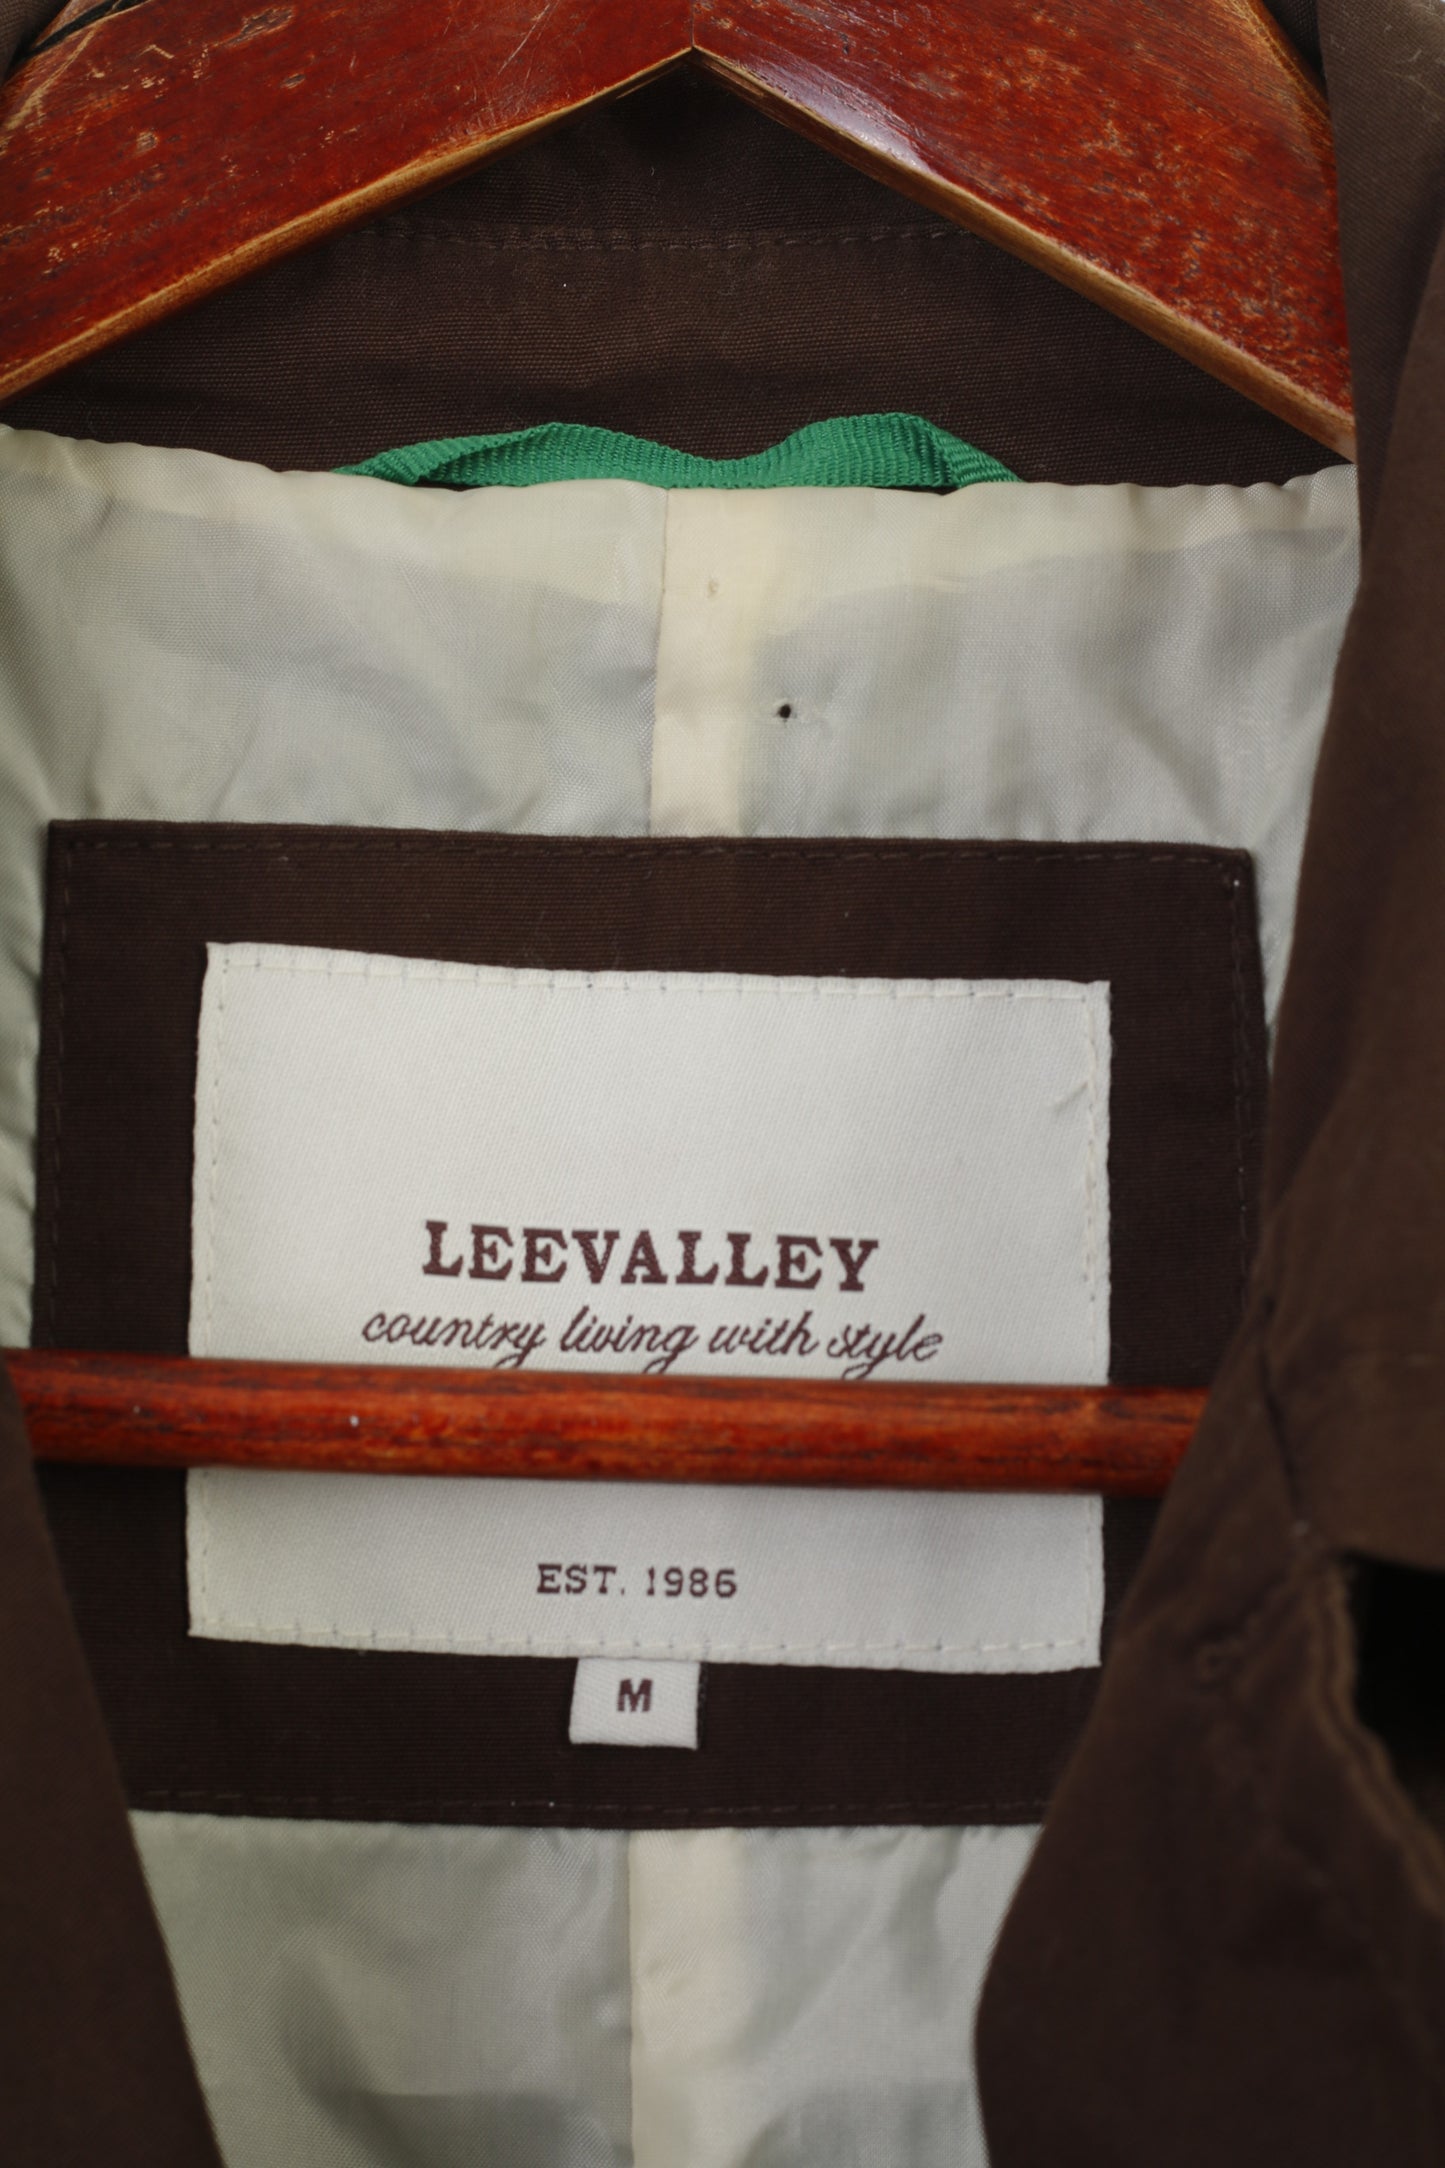 Leevalley Femmes M Manteau Marron Trench Coton Simple Boutonnage Bas Col Country Ceinture Veste